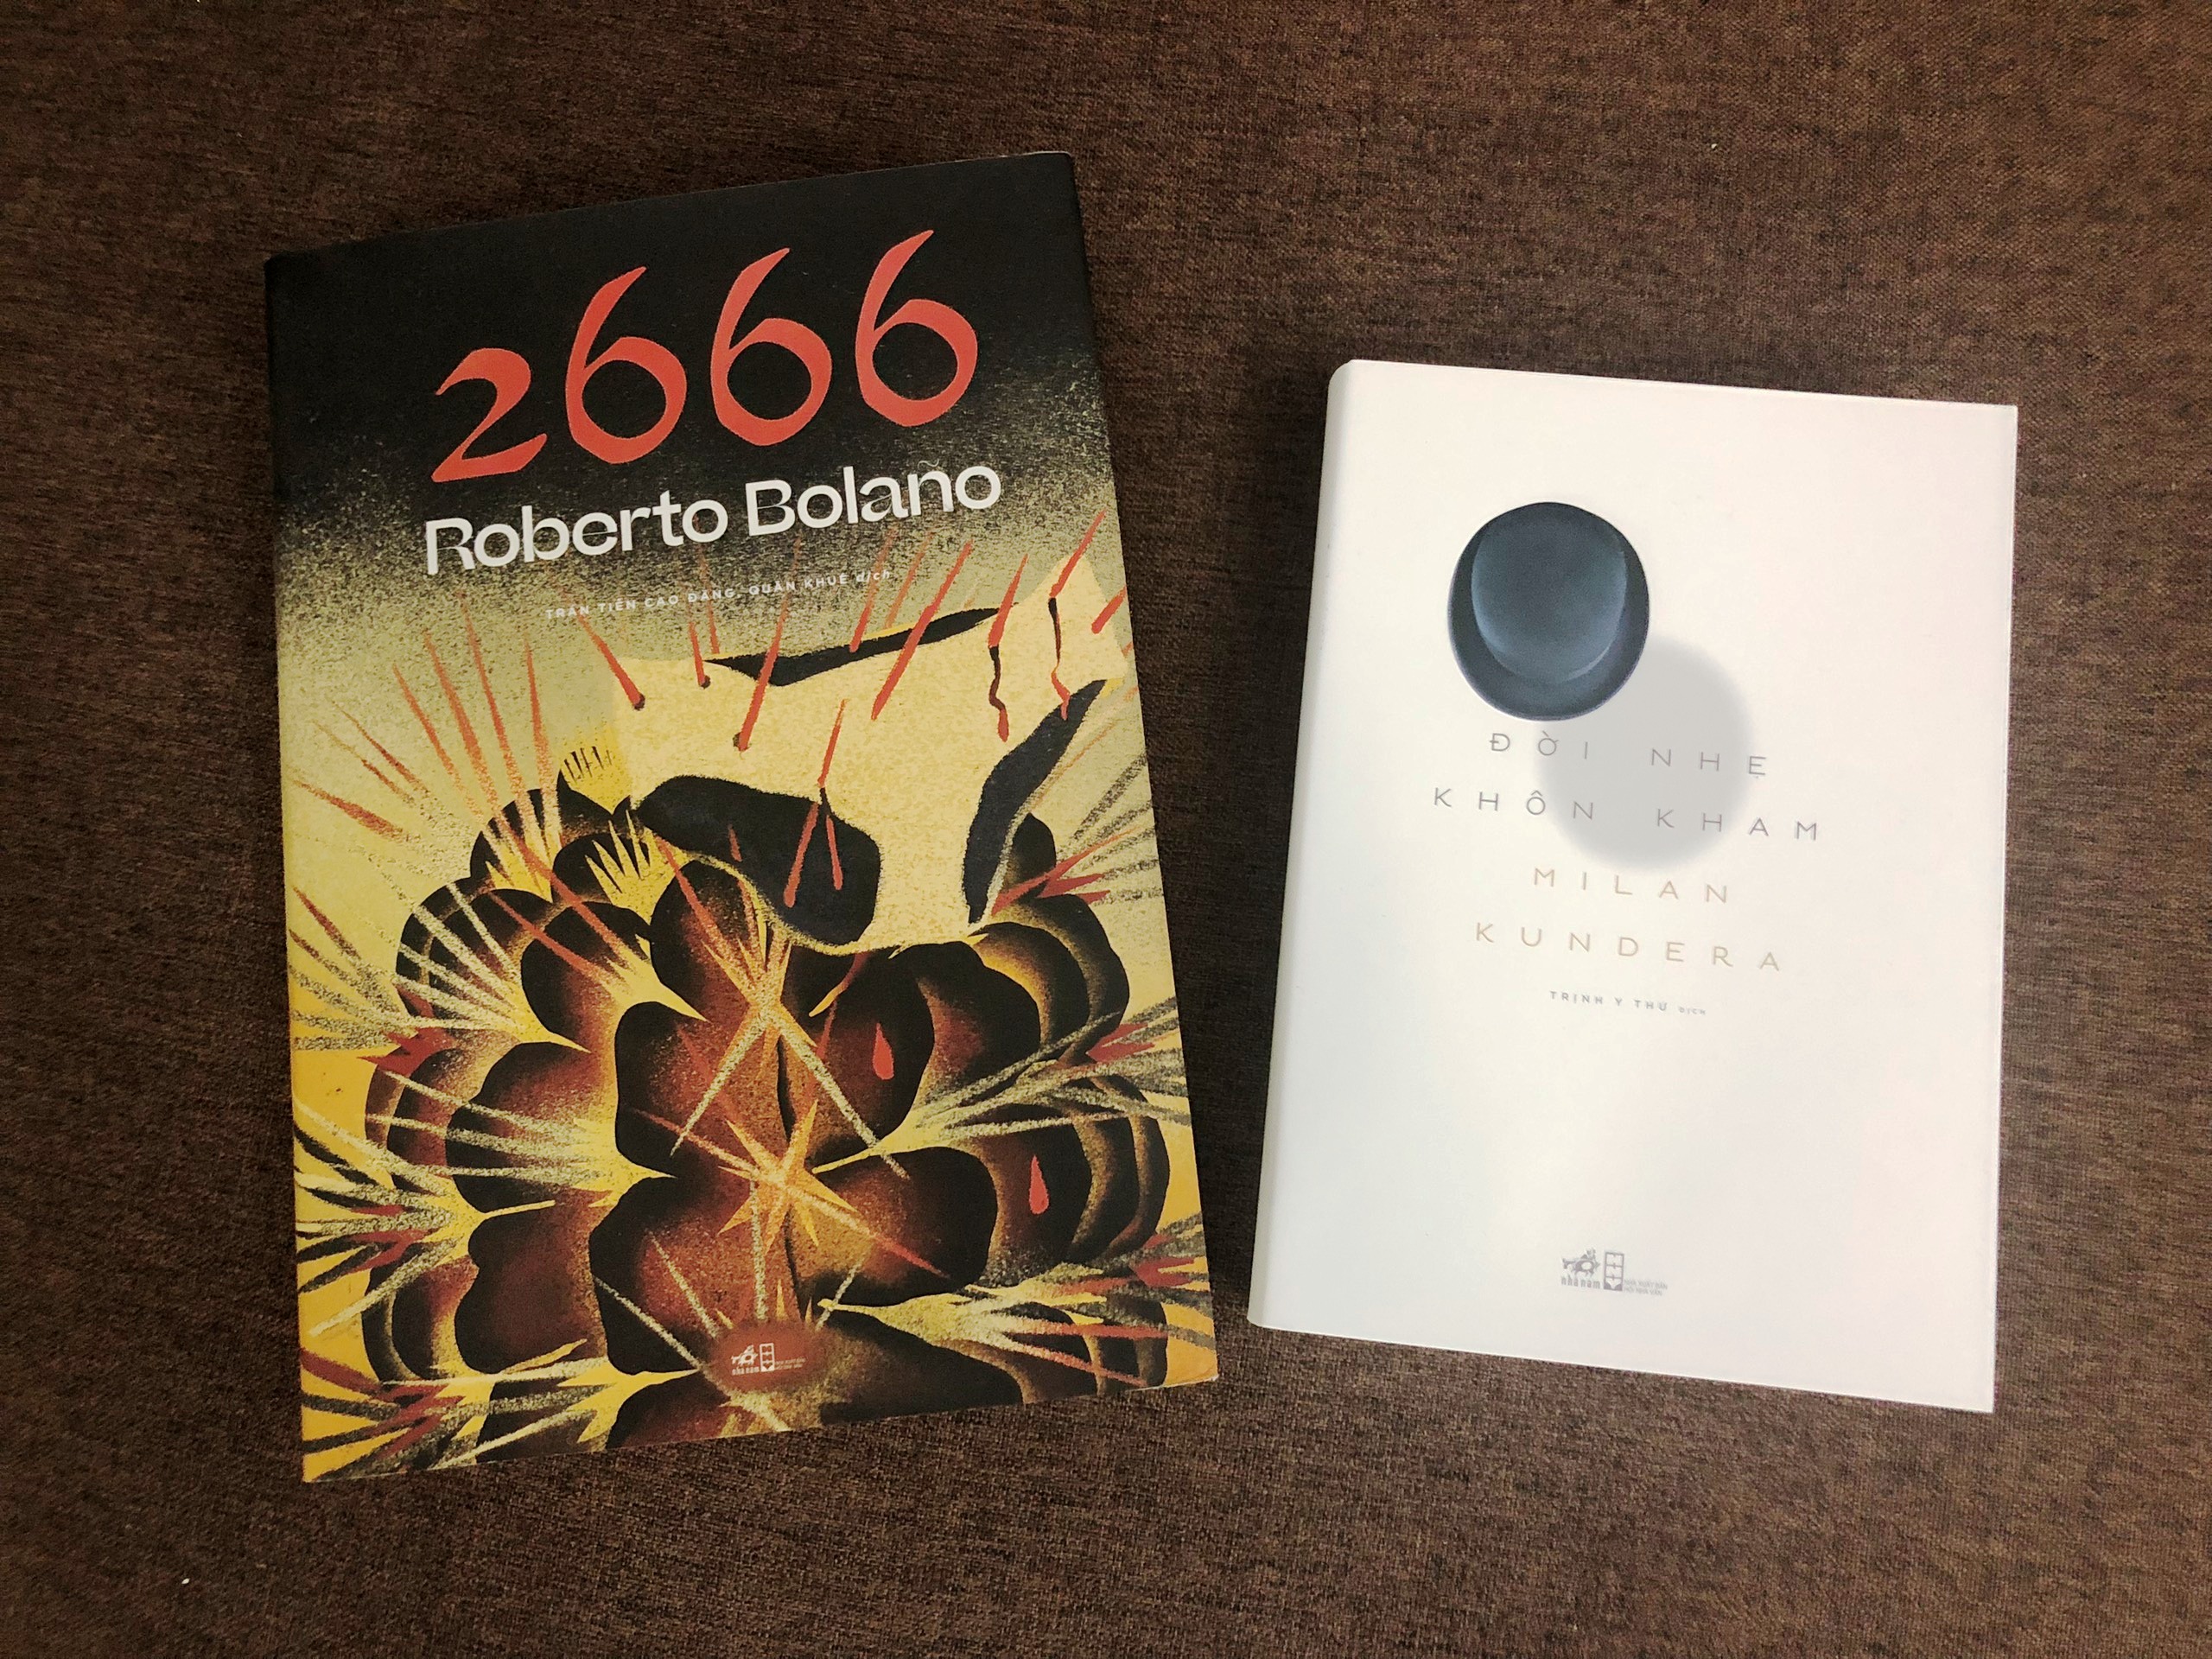 Combo sách: 2666 (Roberto Bolaño) + Đời Nhẹ Khôn Kham (Milan Kundera)